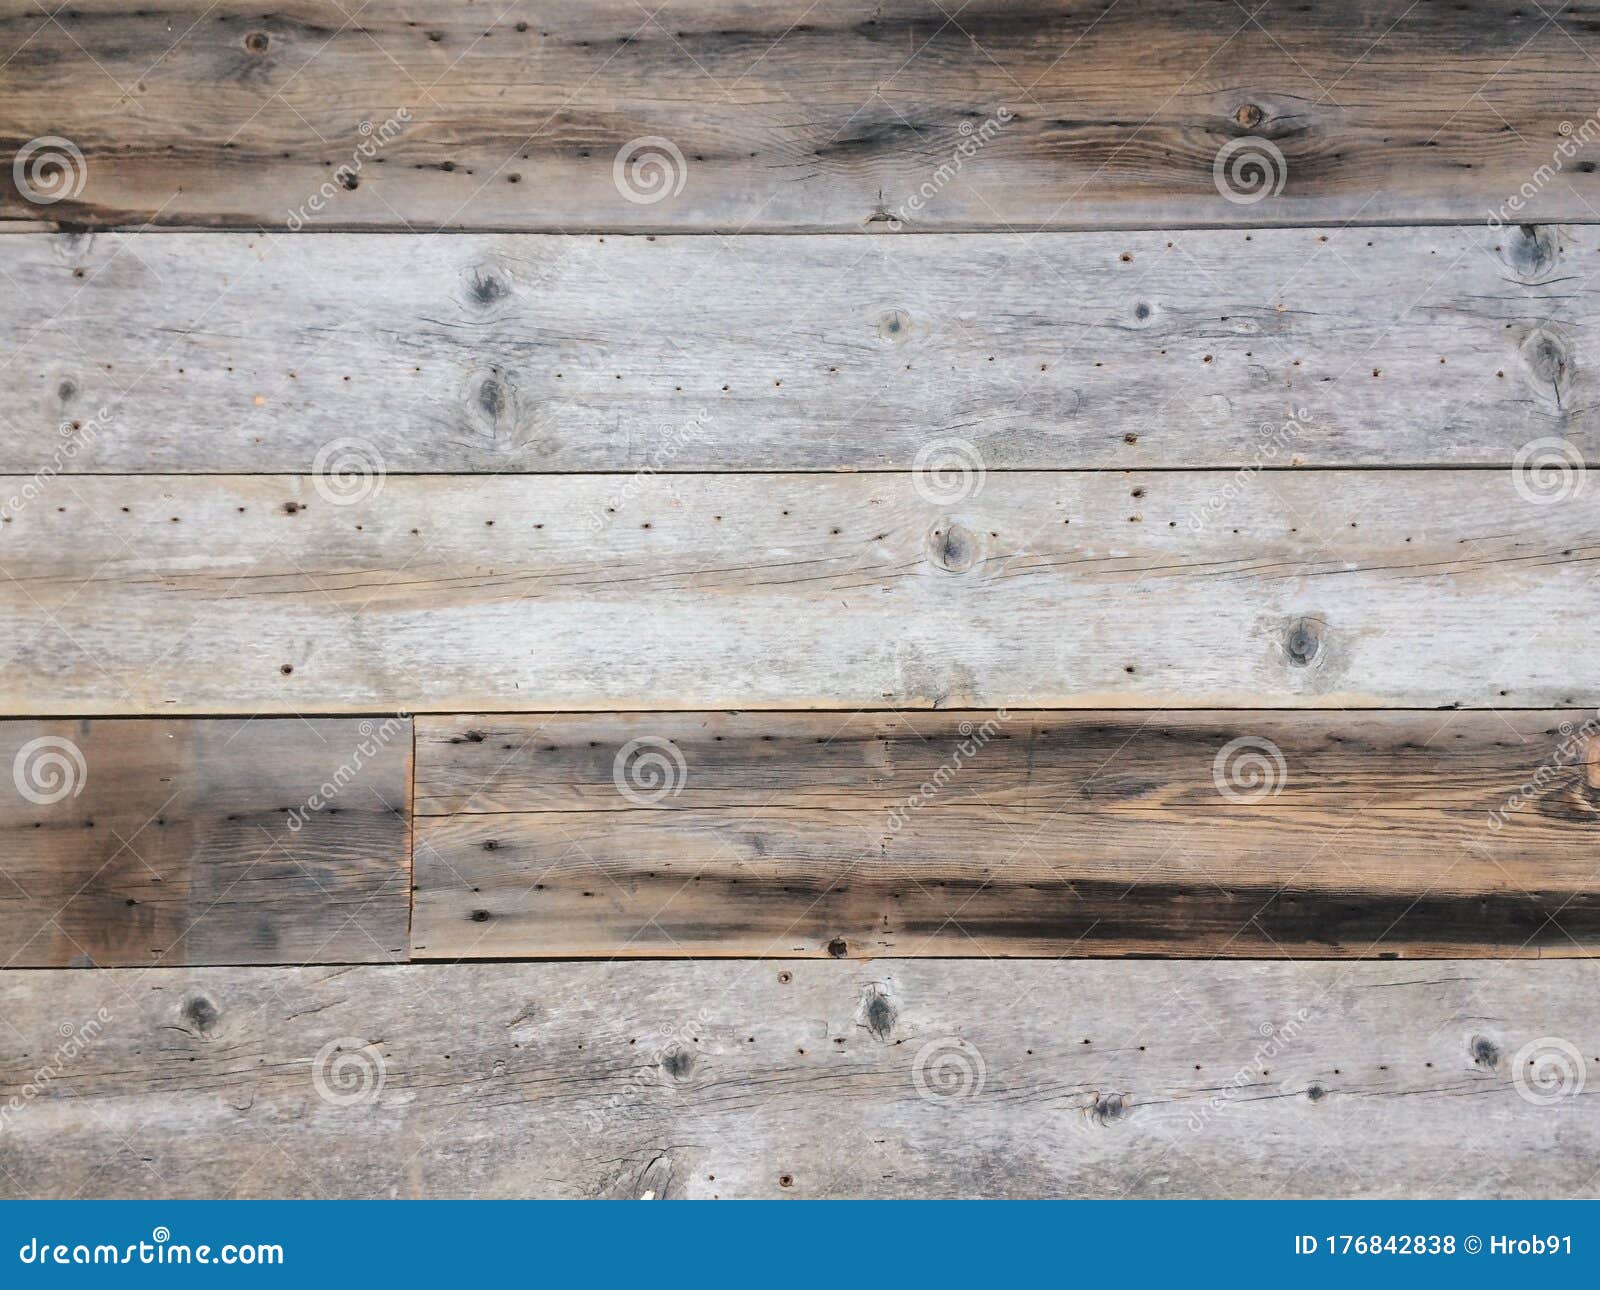 Lớp tấm gỗ tái chế cũ kỹ giúp cho ngôi nhà của bạn trở nên ấm cúng và linh hoạt hơn. Hình ảnh những tấm ván với hoa văn sắc nét và đường nét độc đáo sẽ khuấy động khát khao sáng tạo của bạn.